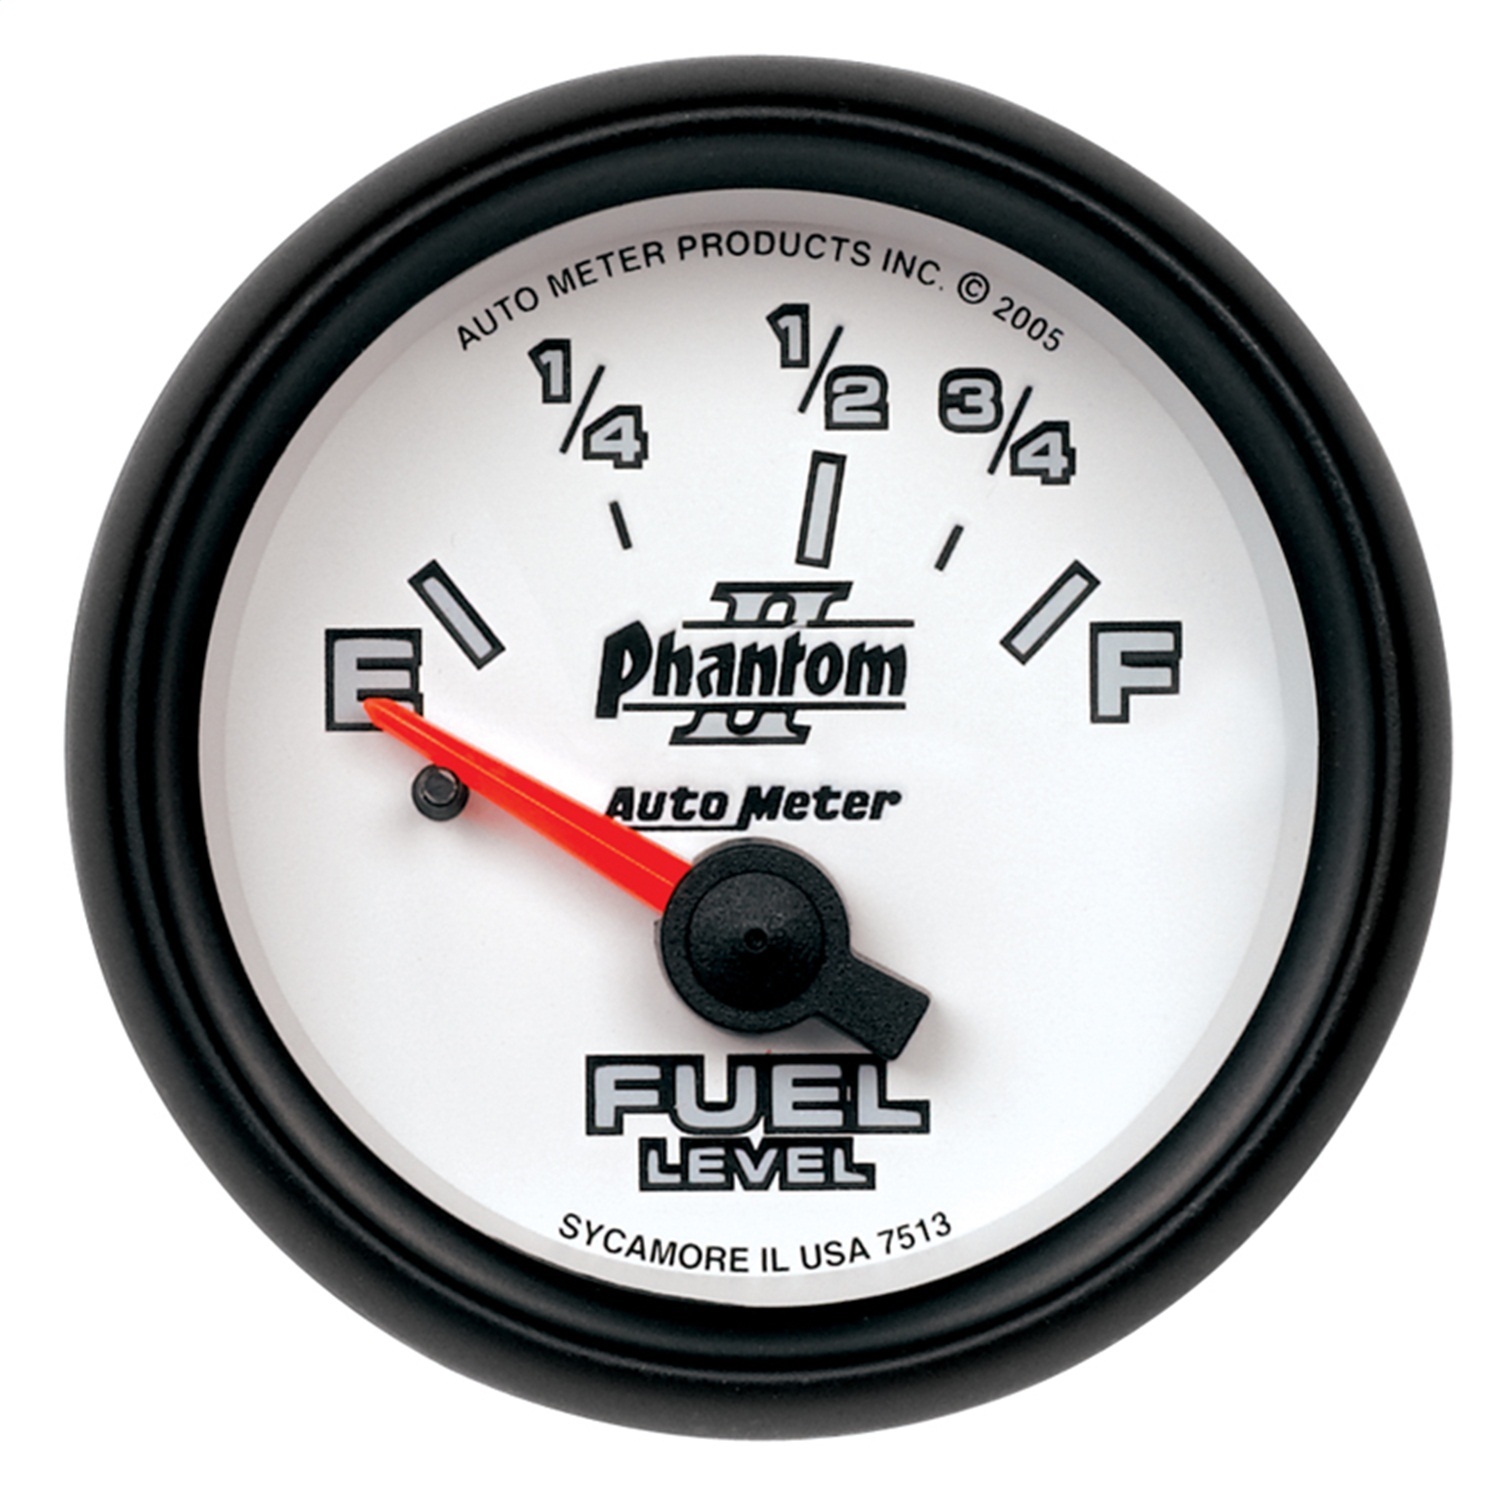 Auto Meter Auto Meter 7515 Phantom II; Electric Fuel Level Gauge